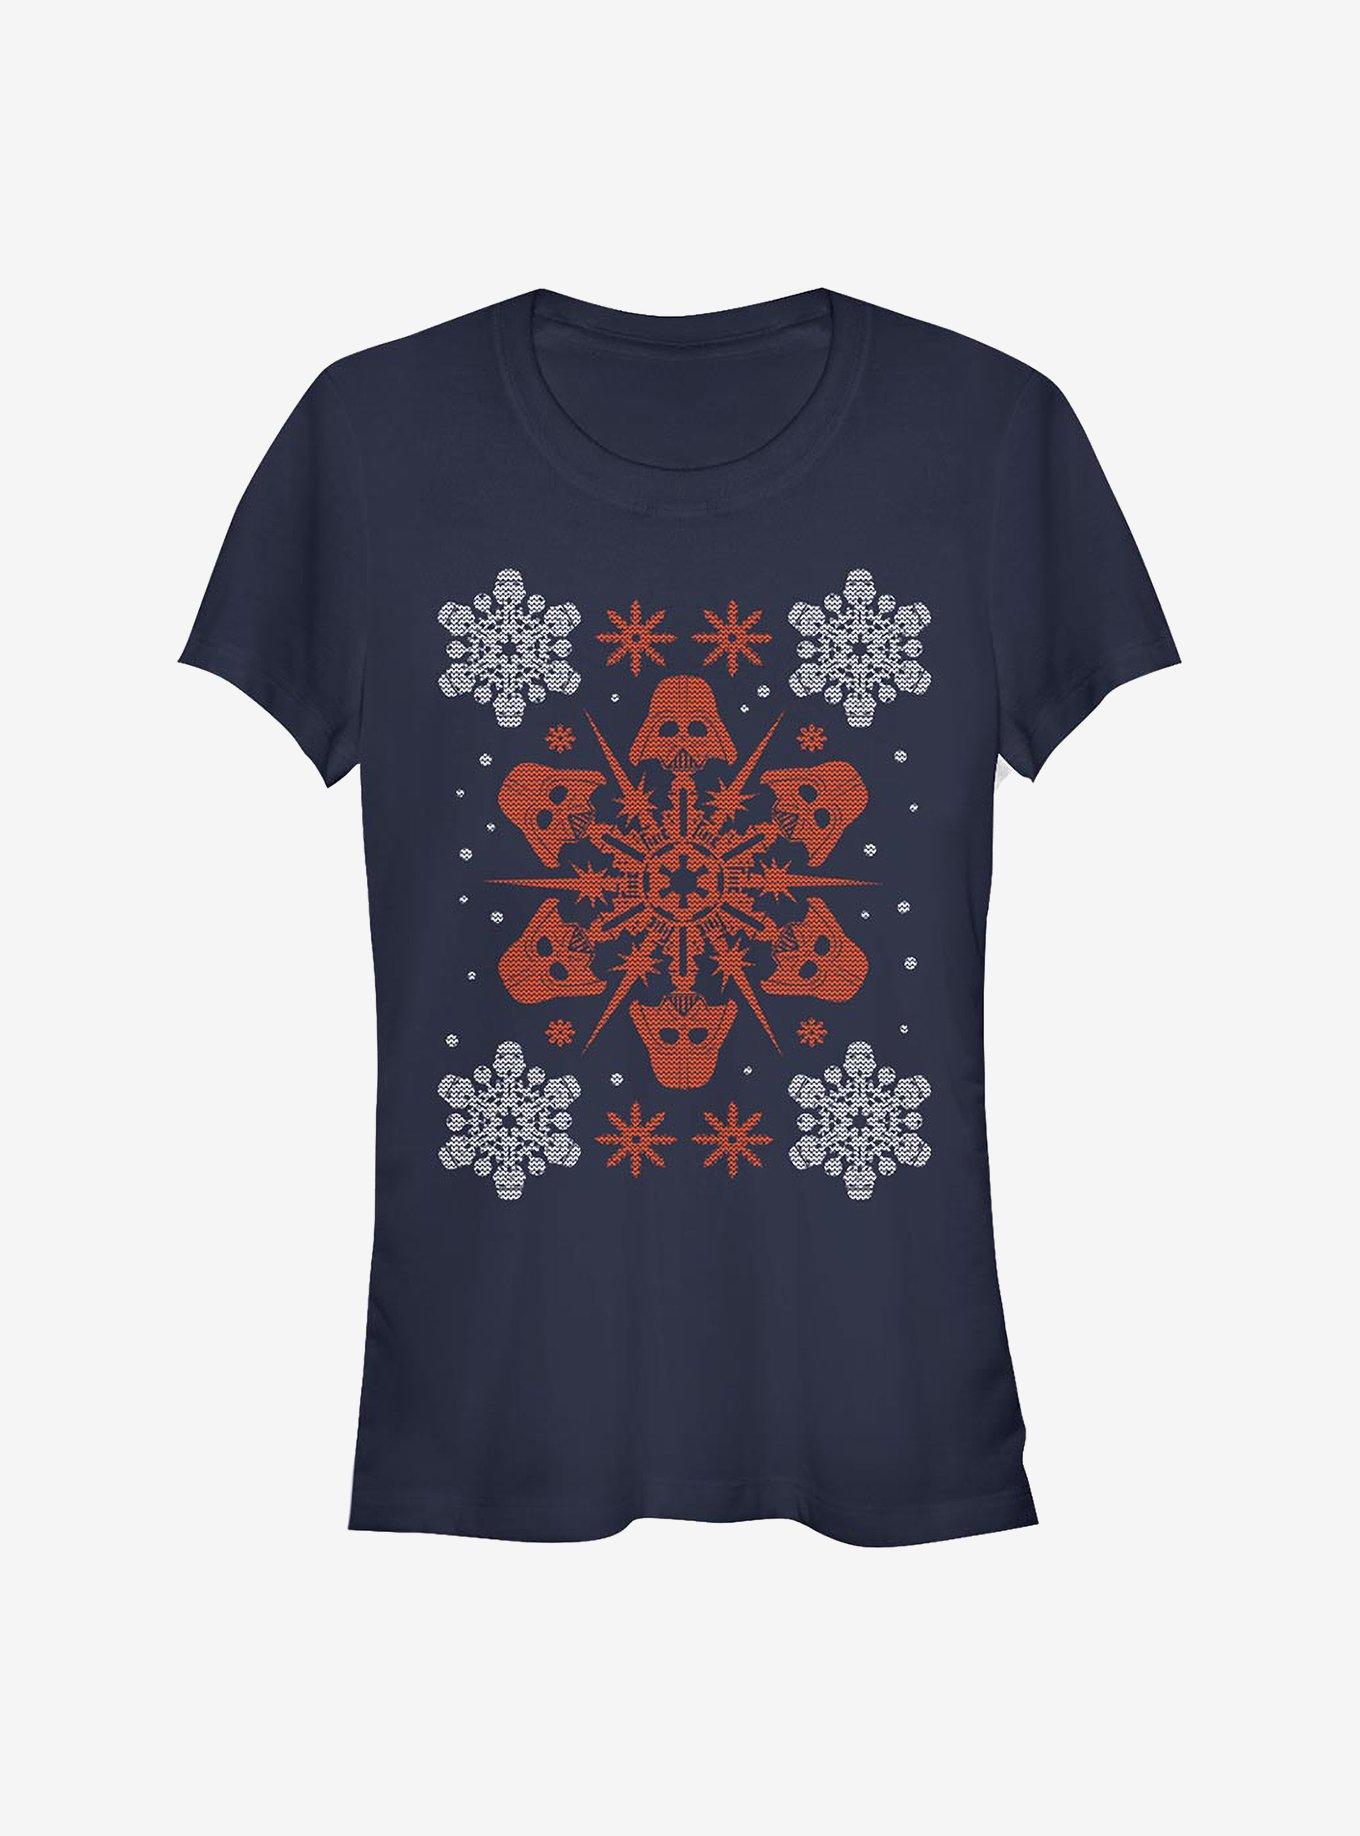 Star Wars Vader Holiday Snow-Flake Girls T-Shirt, NAVY, hi-res